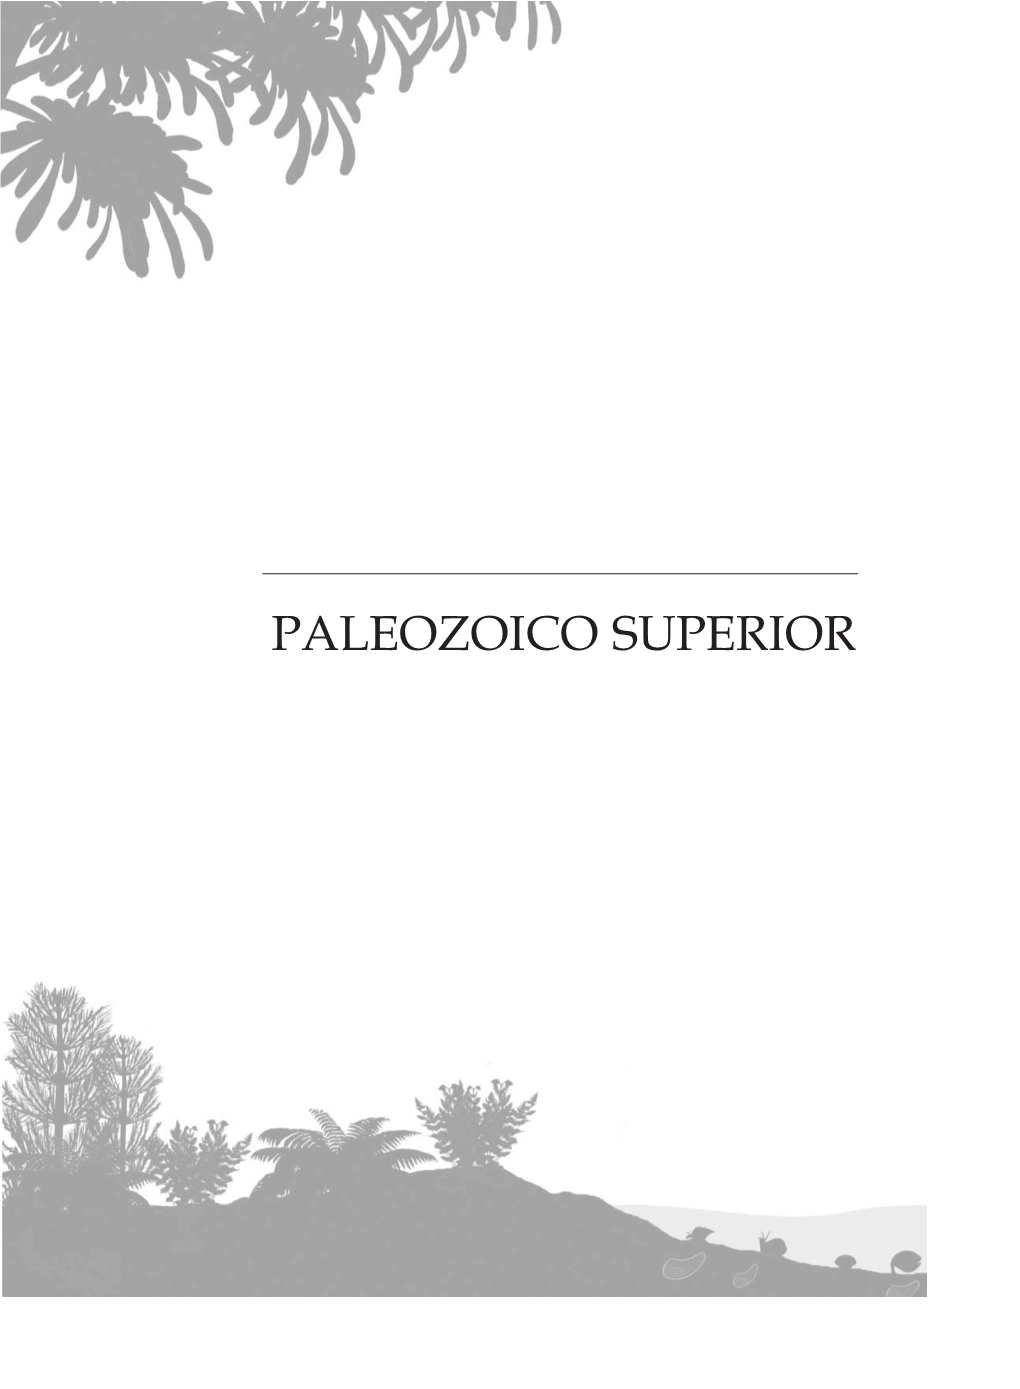 Paleozoico Superior